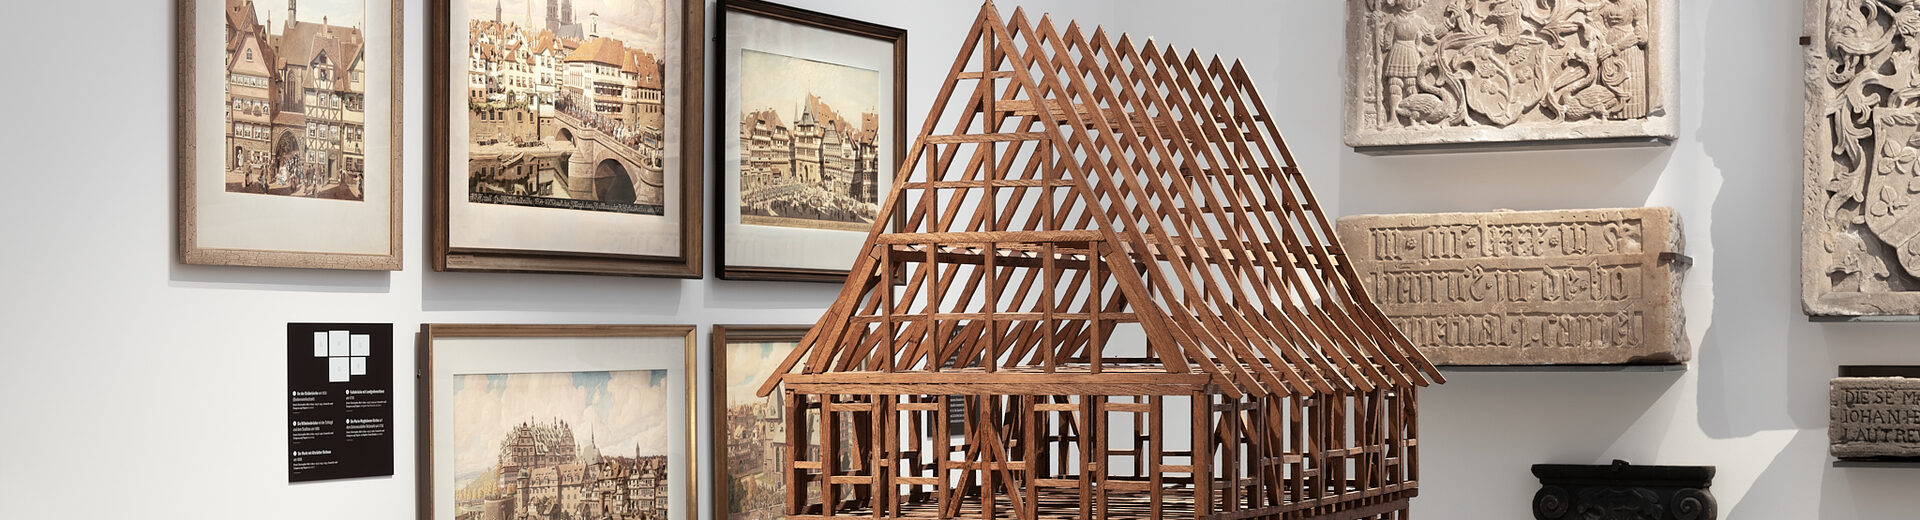 Holzmodell eines Fachwerkhauses, im Hintergrund hängen Bilder in Holzrahmen